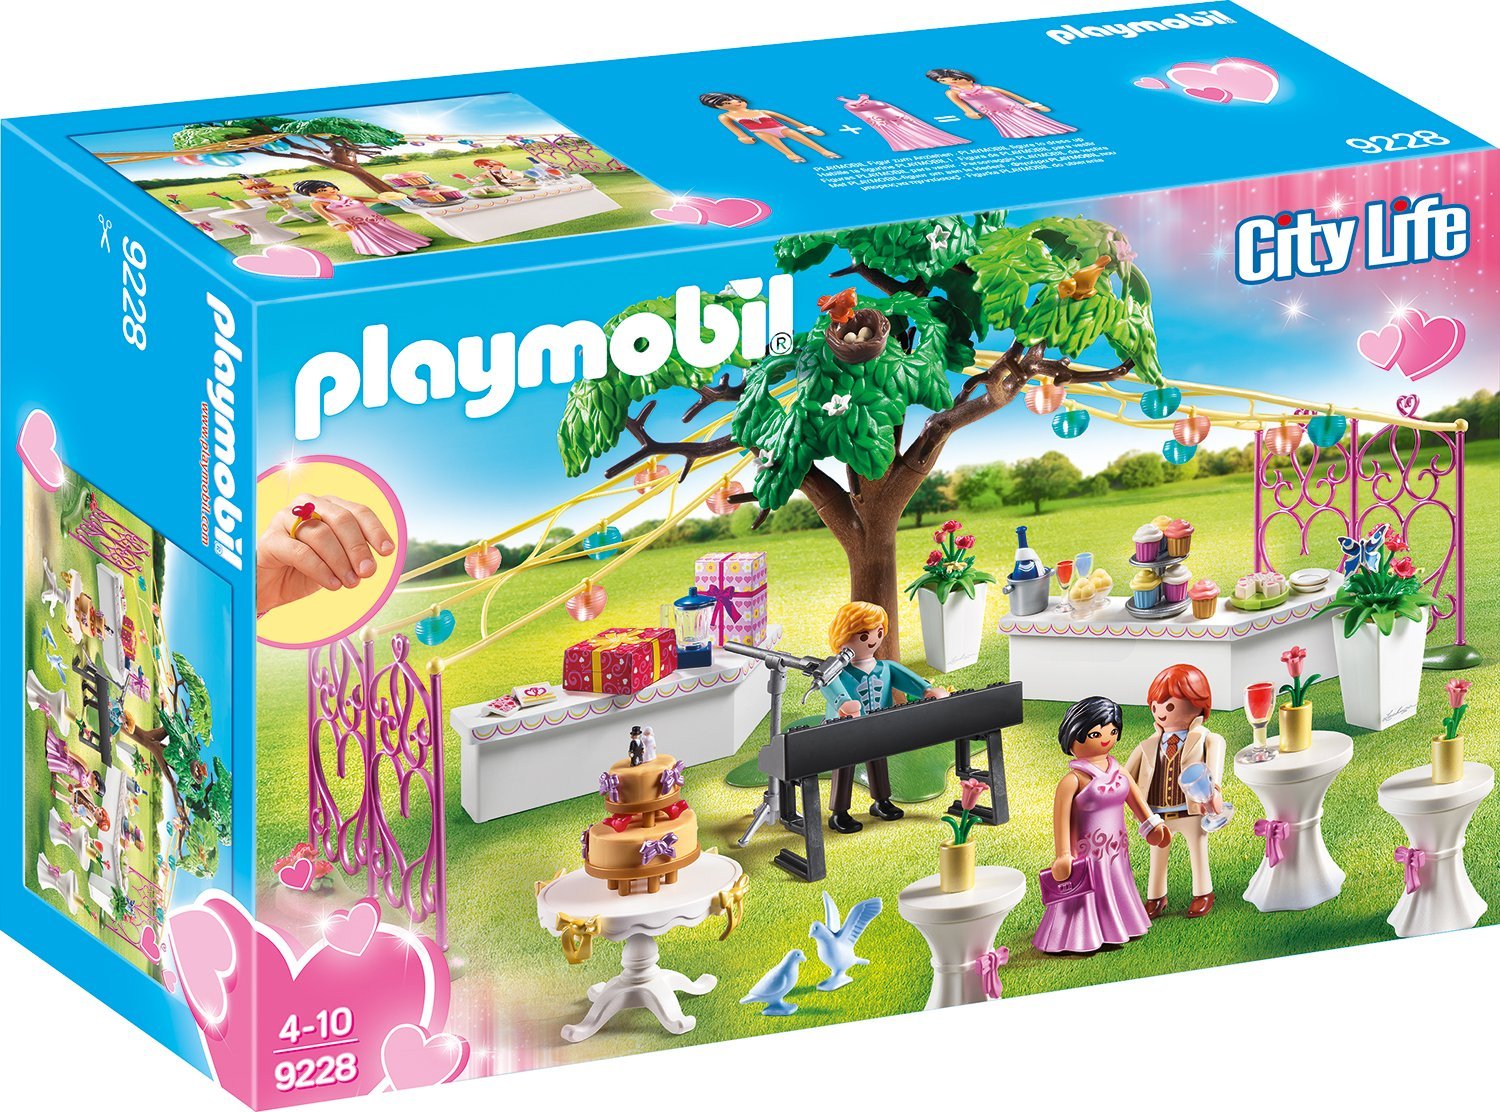 Playmobil 9228 - Hochzeitsparty